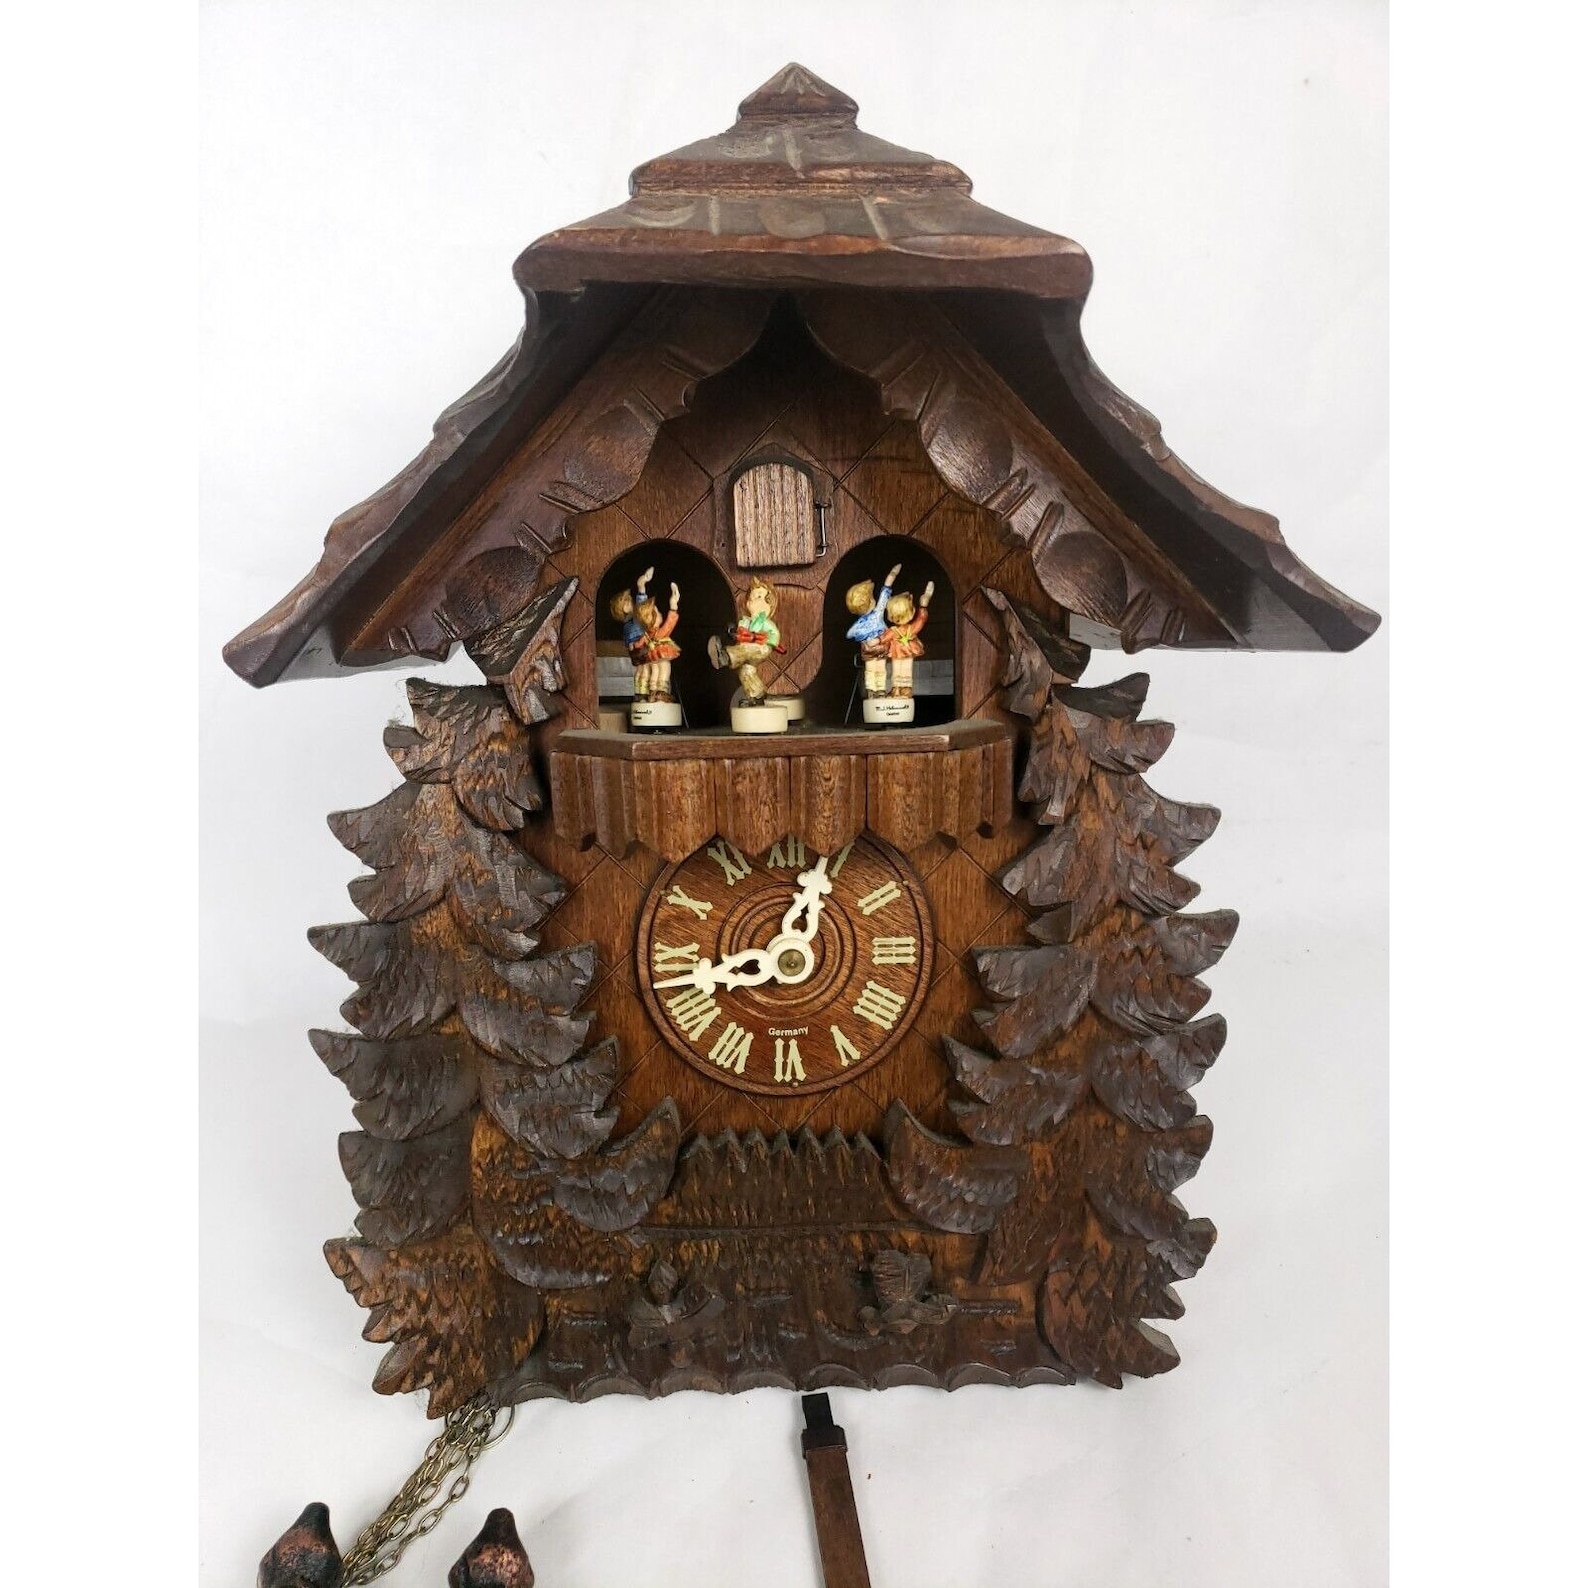 VTG Hummel Cuckoo Clock Musical German Black Forest Danbury Mint Weight Driven